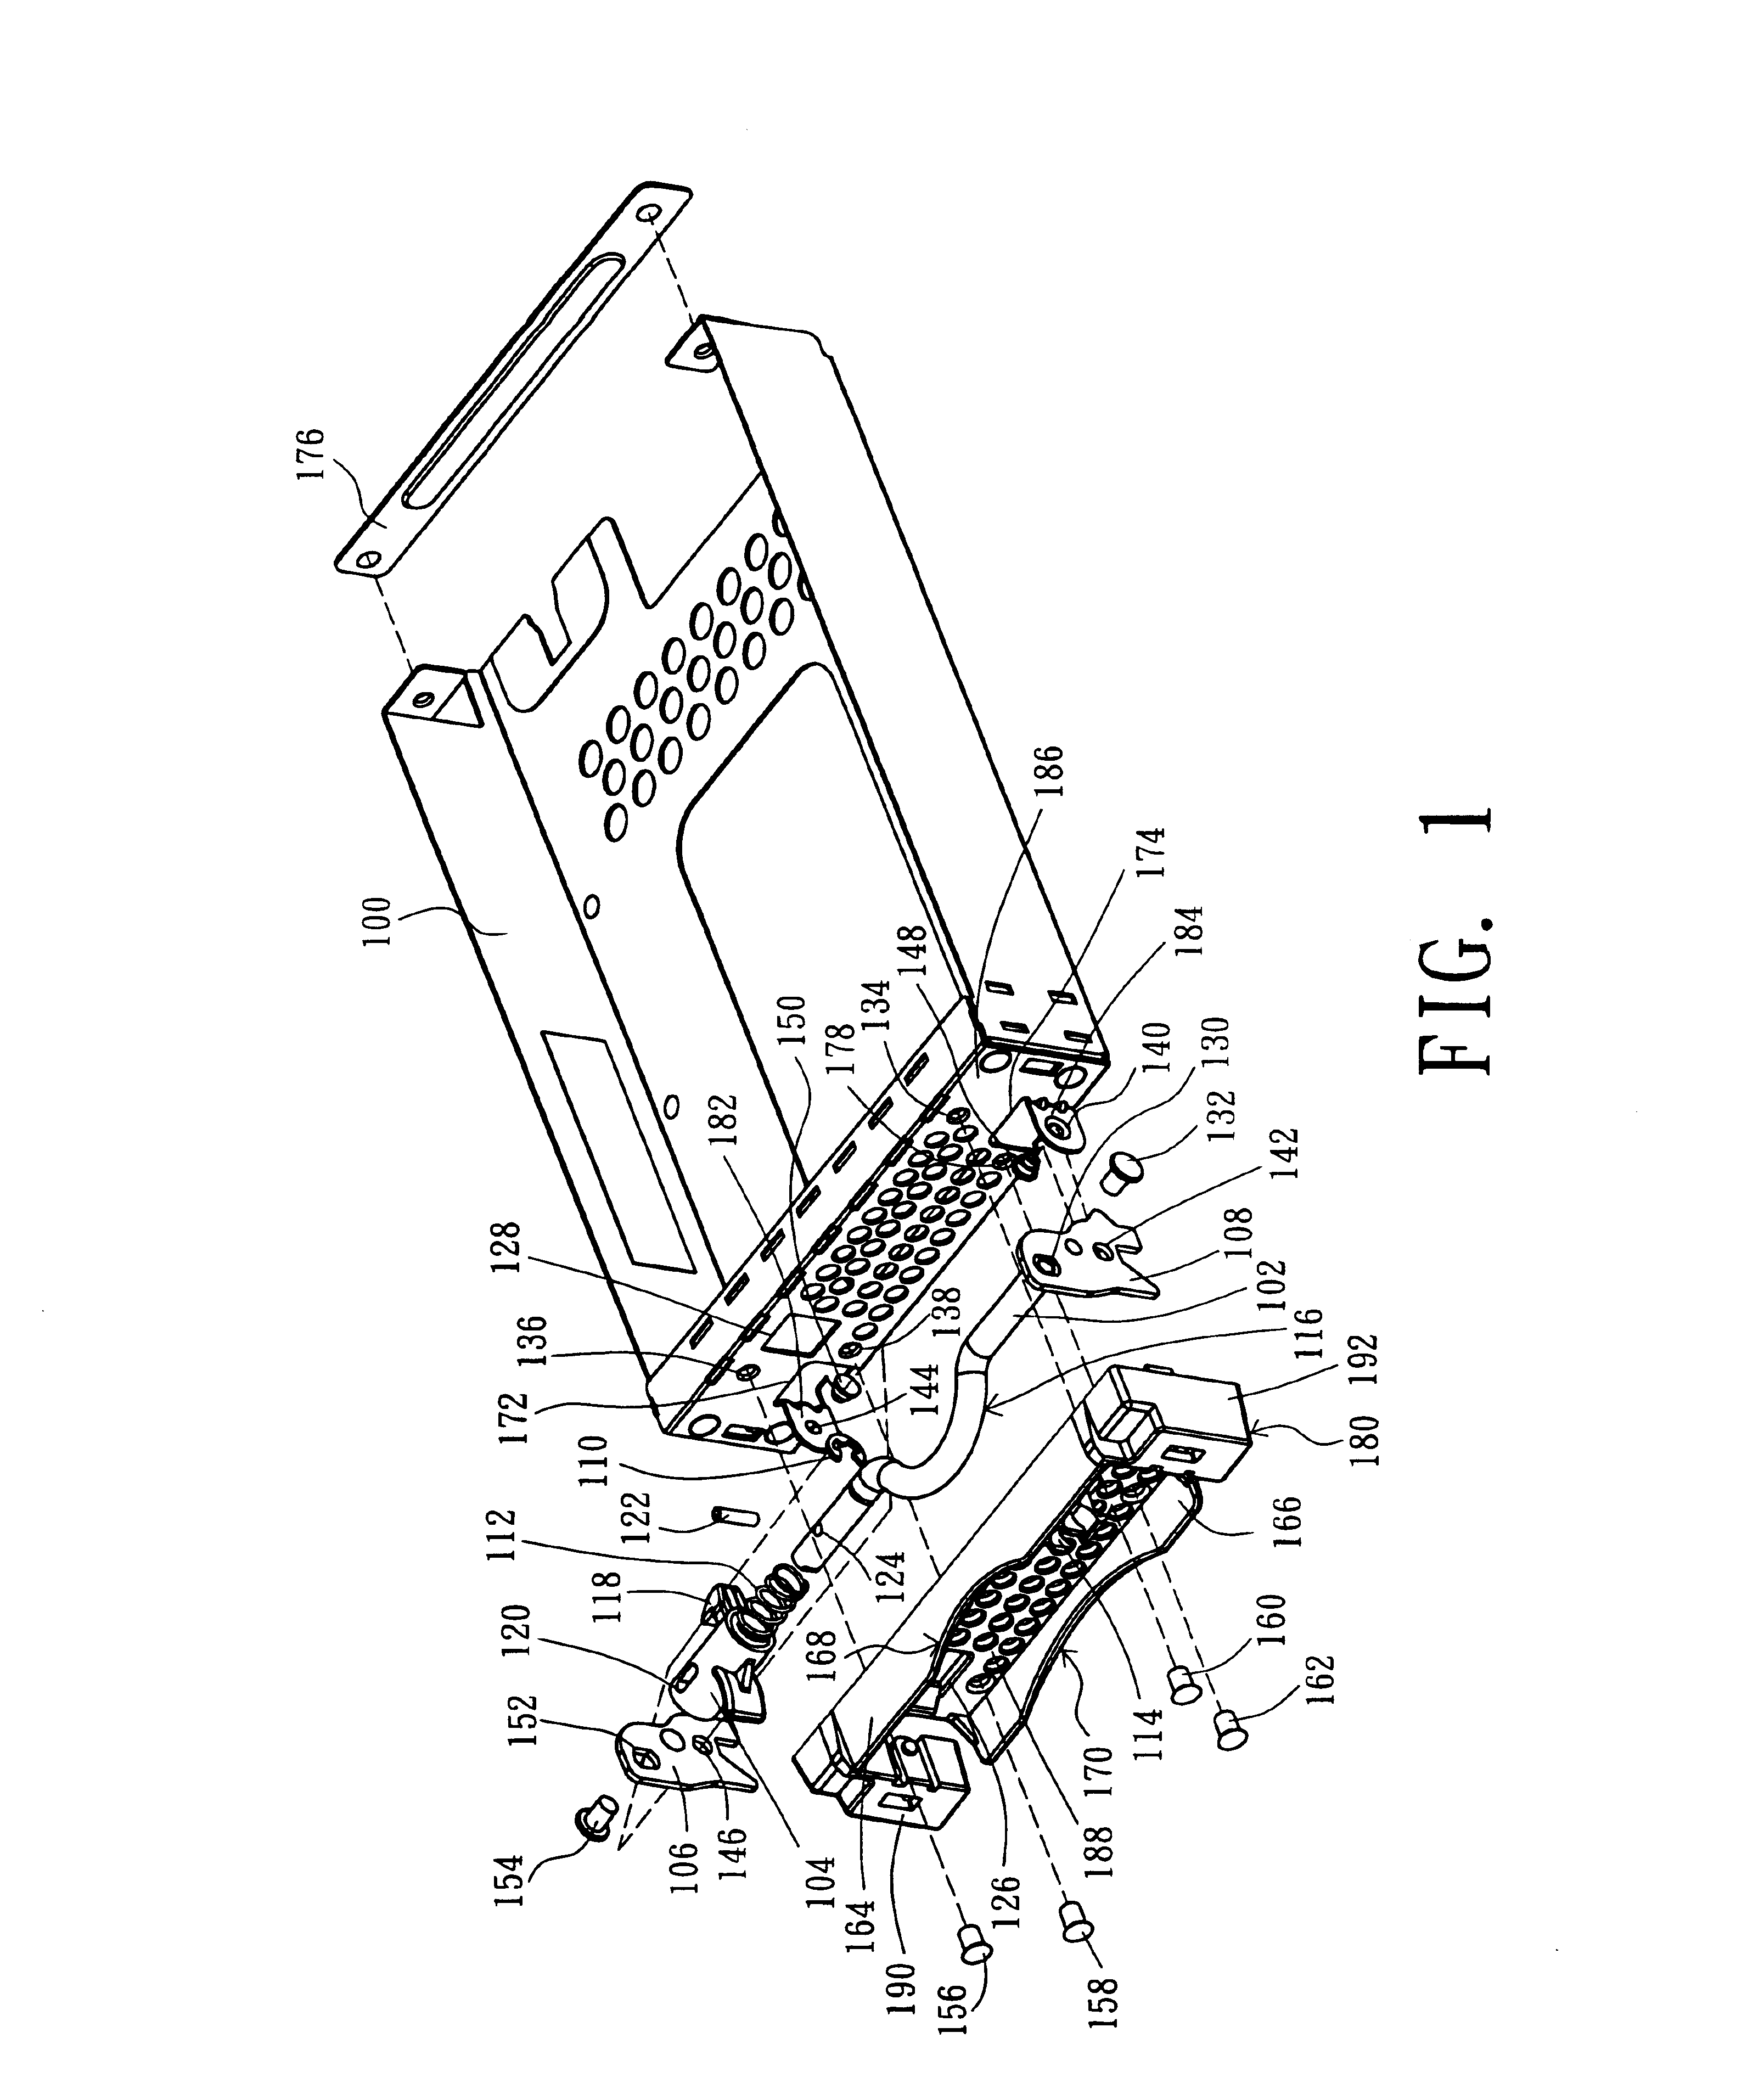 Hard disk drive tray module